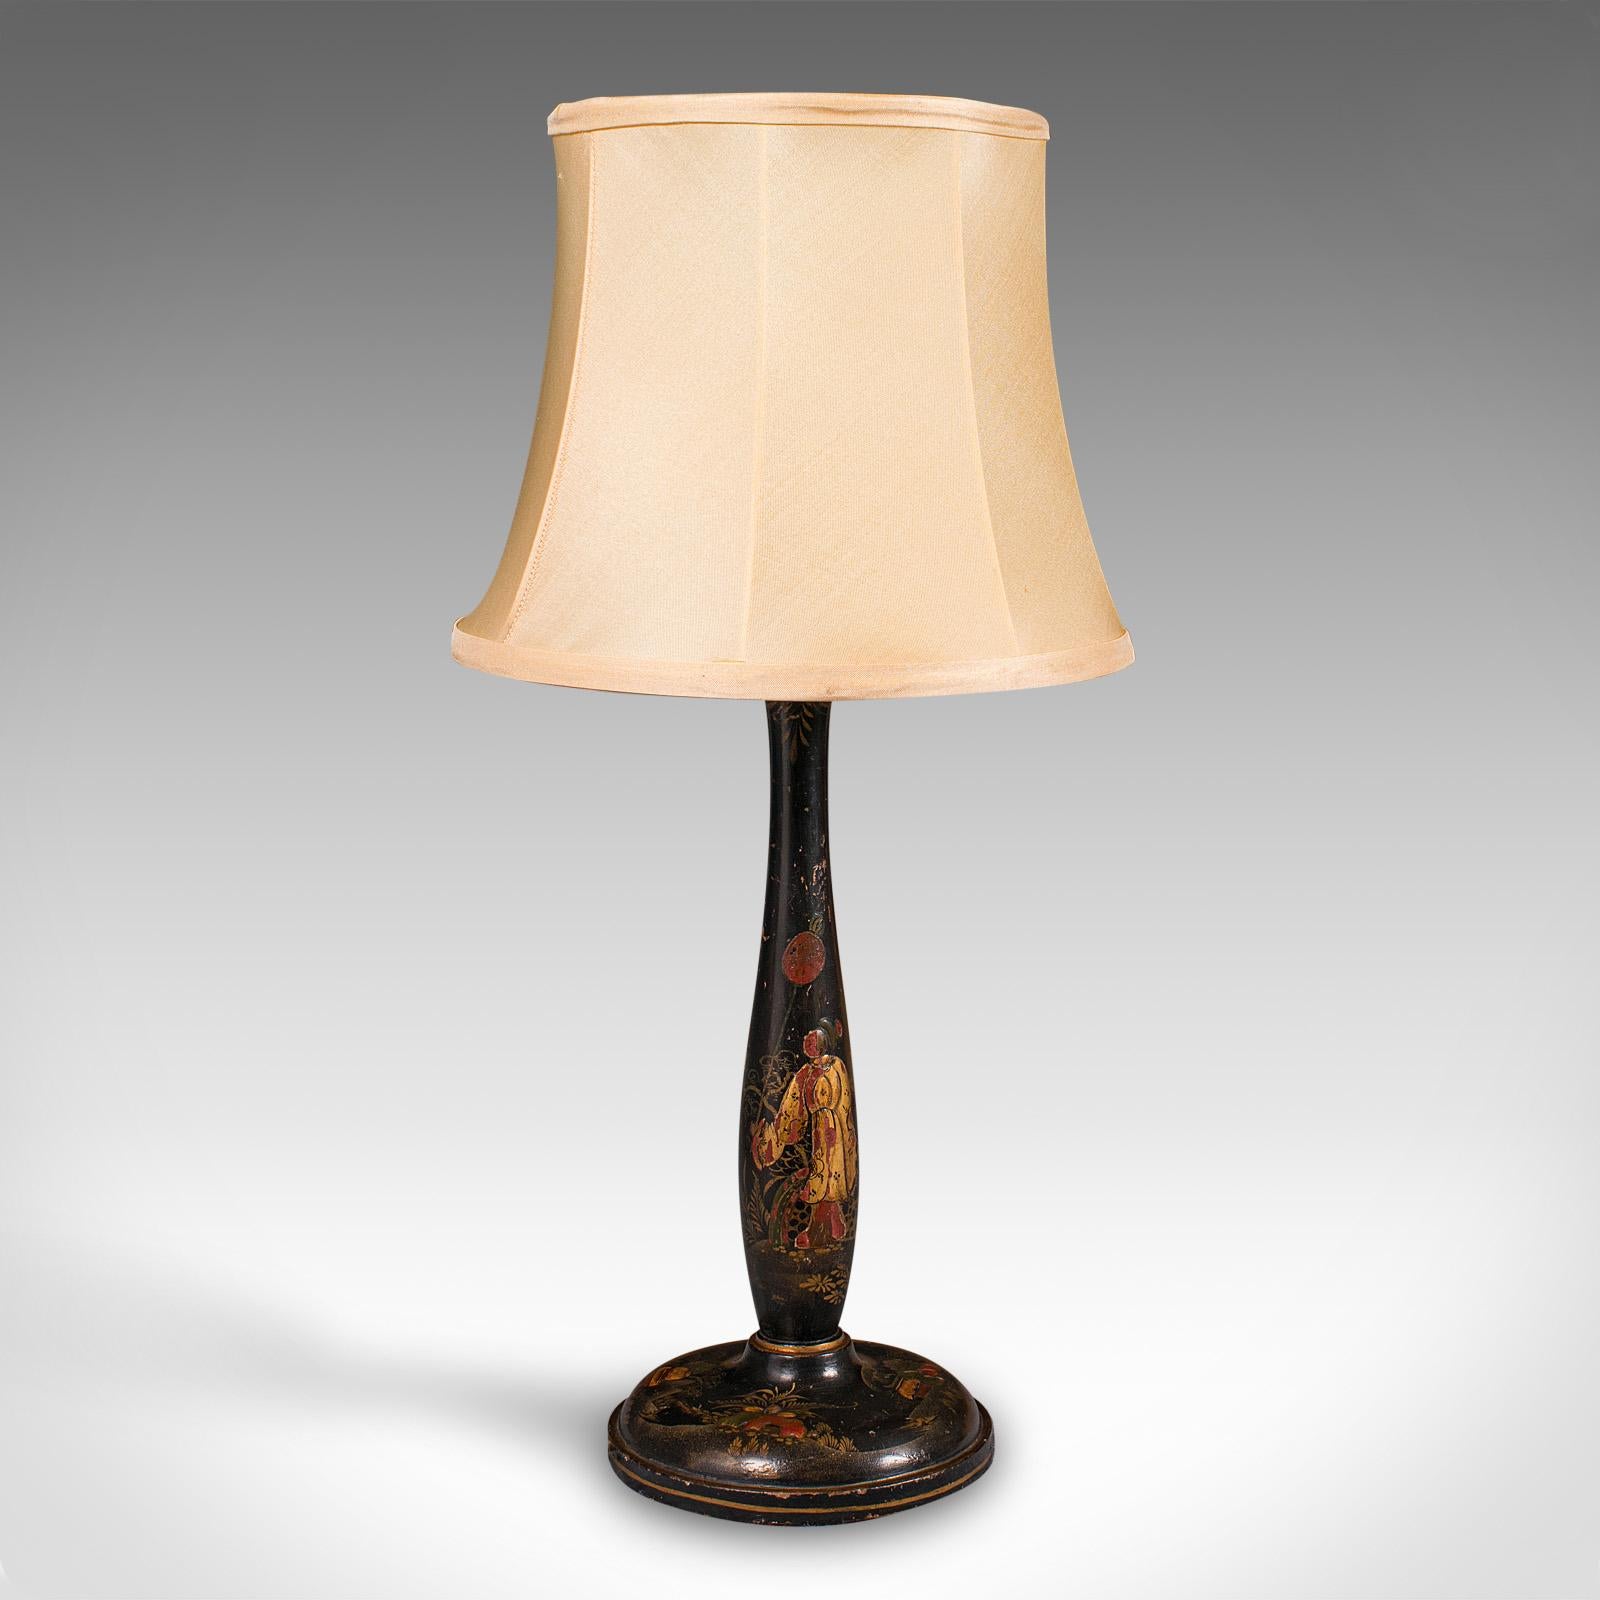 Il s'agit d'une lampe d'appoint ébonisée vintage. Lampe de bureau ou de table orientale, en tôle japonaise, datant de la période Art déco, vers 1930.

Merveilleux pied de lampe ébonisé avec un charmant décor
Présente une patine d'usage désirable et